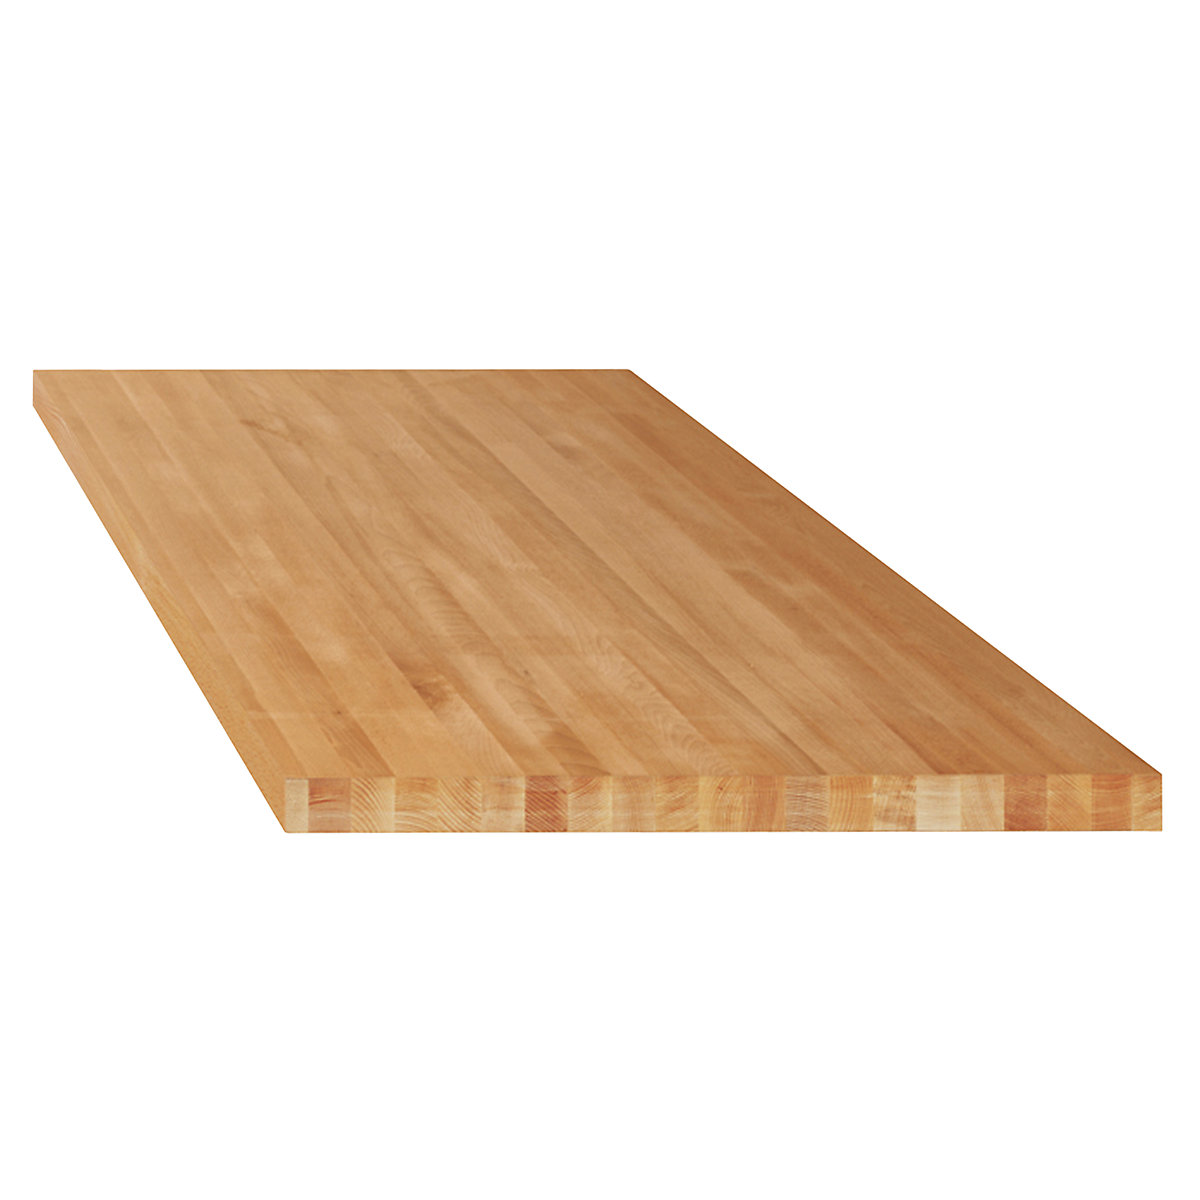 Delovna plošča za modulne delovne mize – LISTA, masivni bukov les, ŠxG 1500 x 750 mm, debelina 50 mm-7